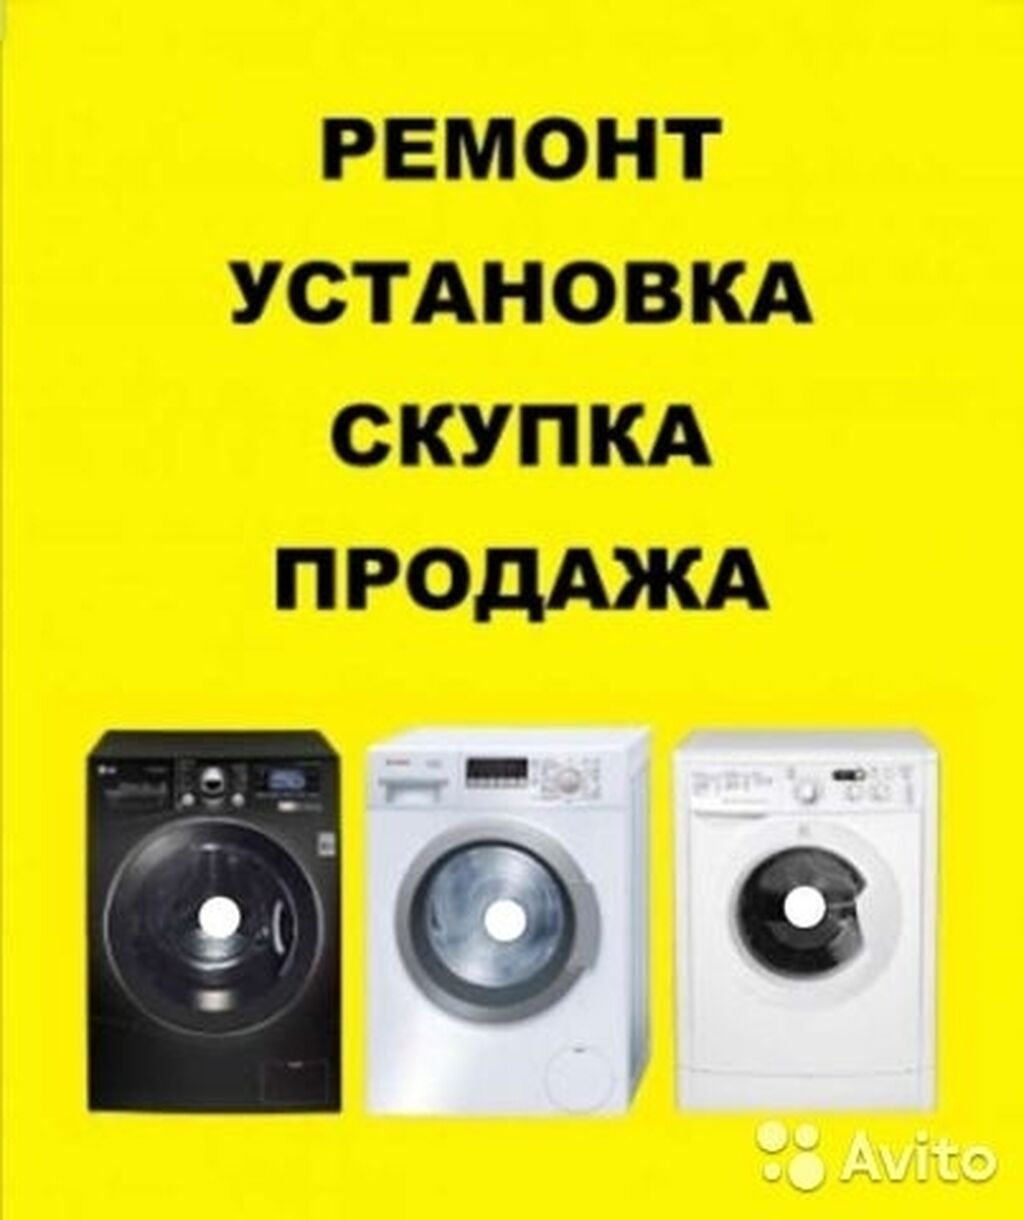 Скупка стиральных машин в новосибирске